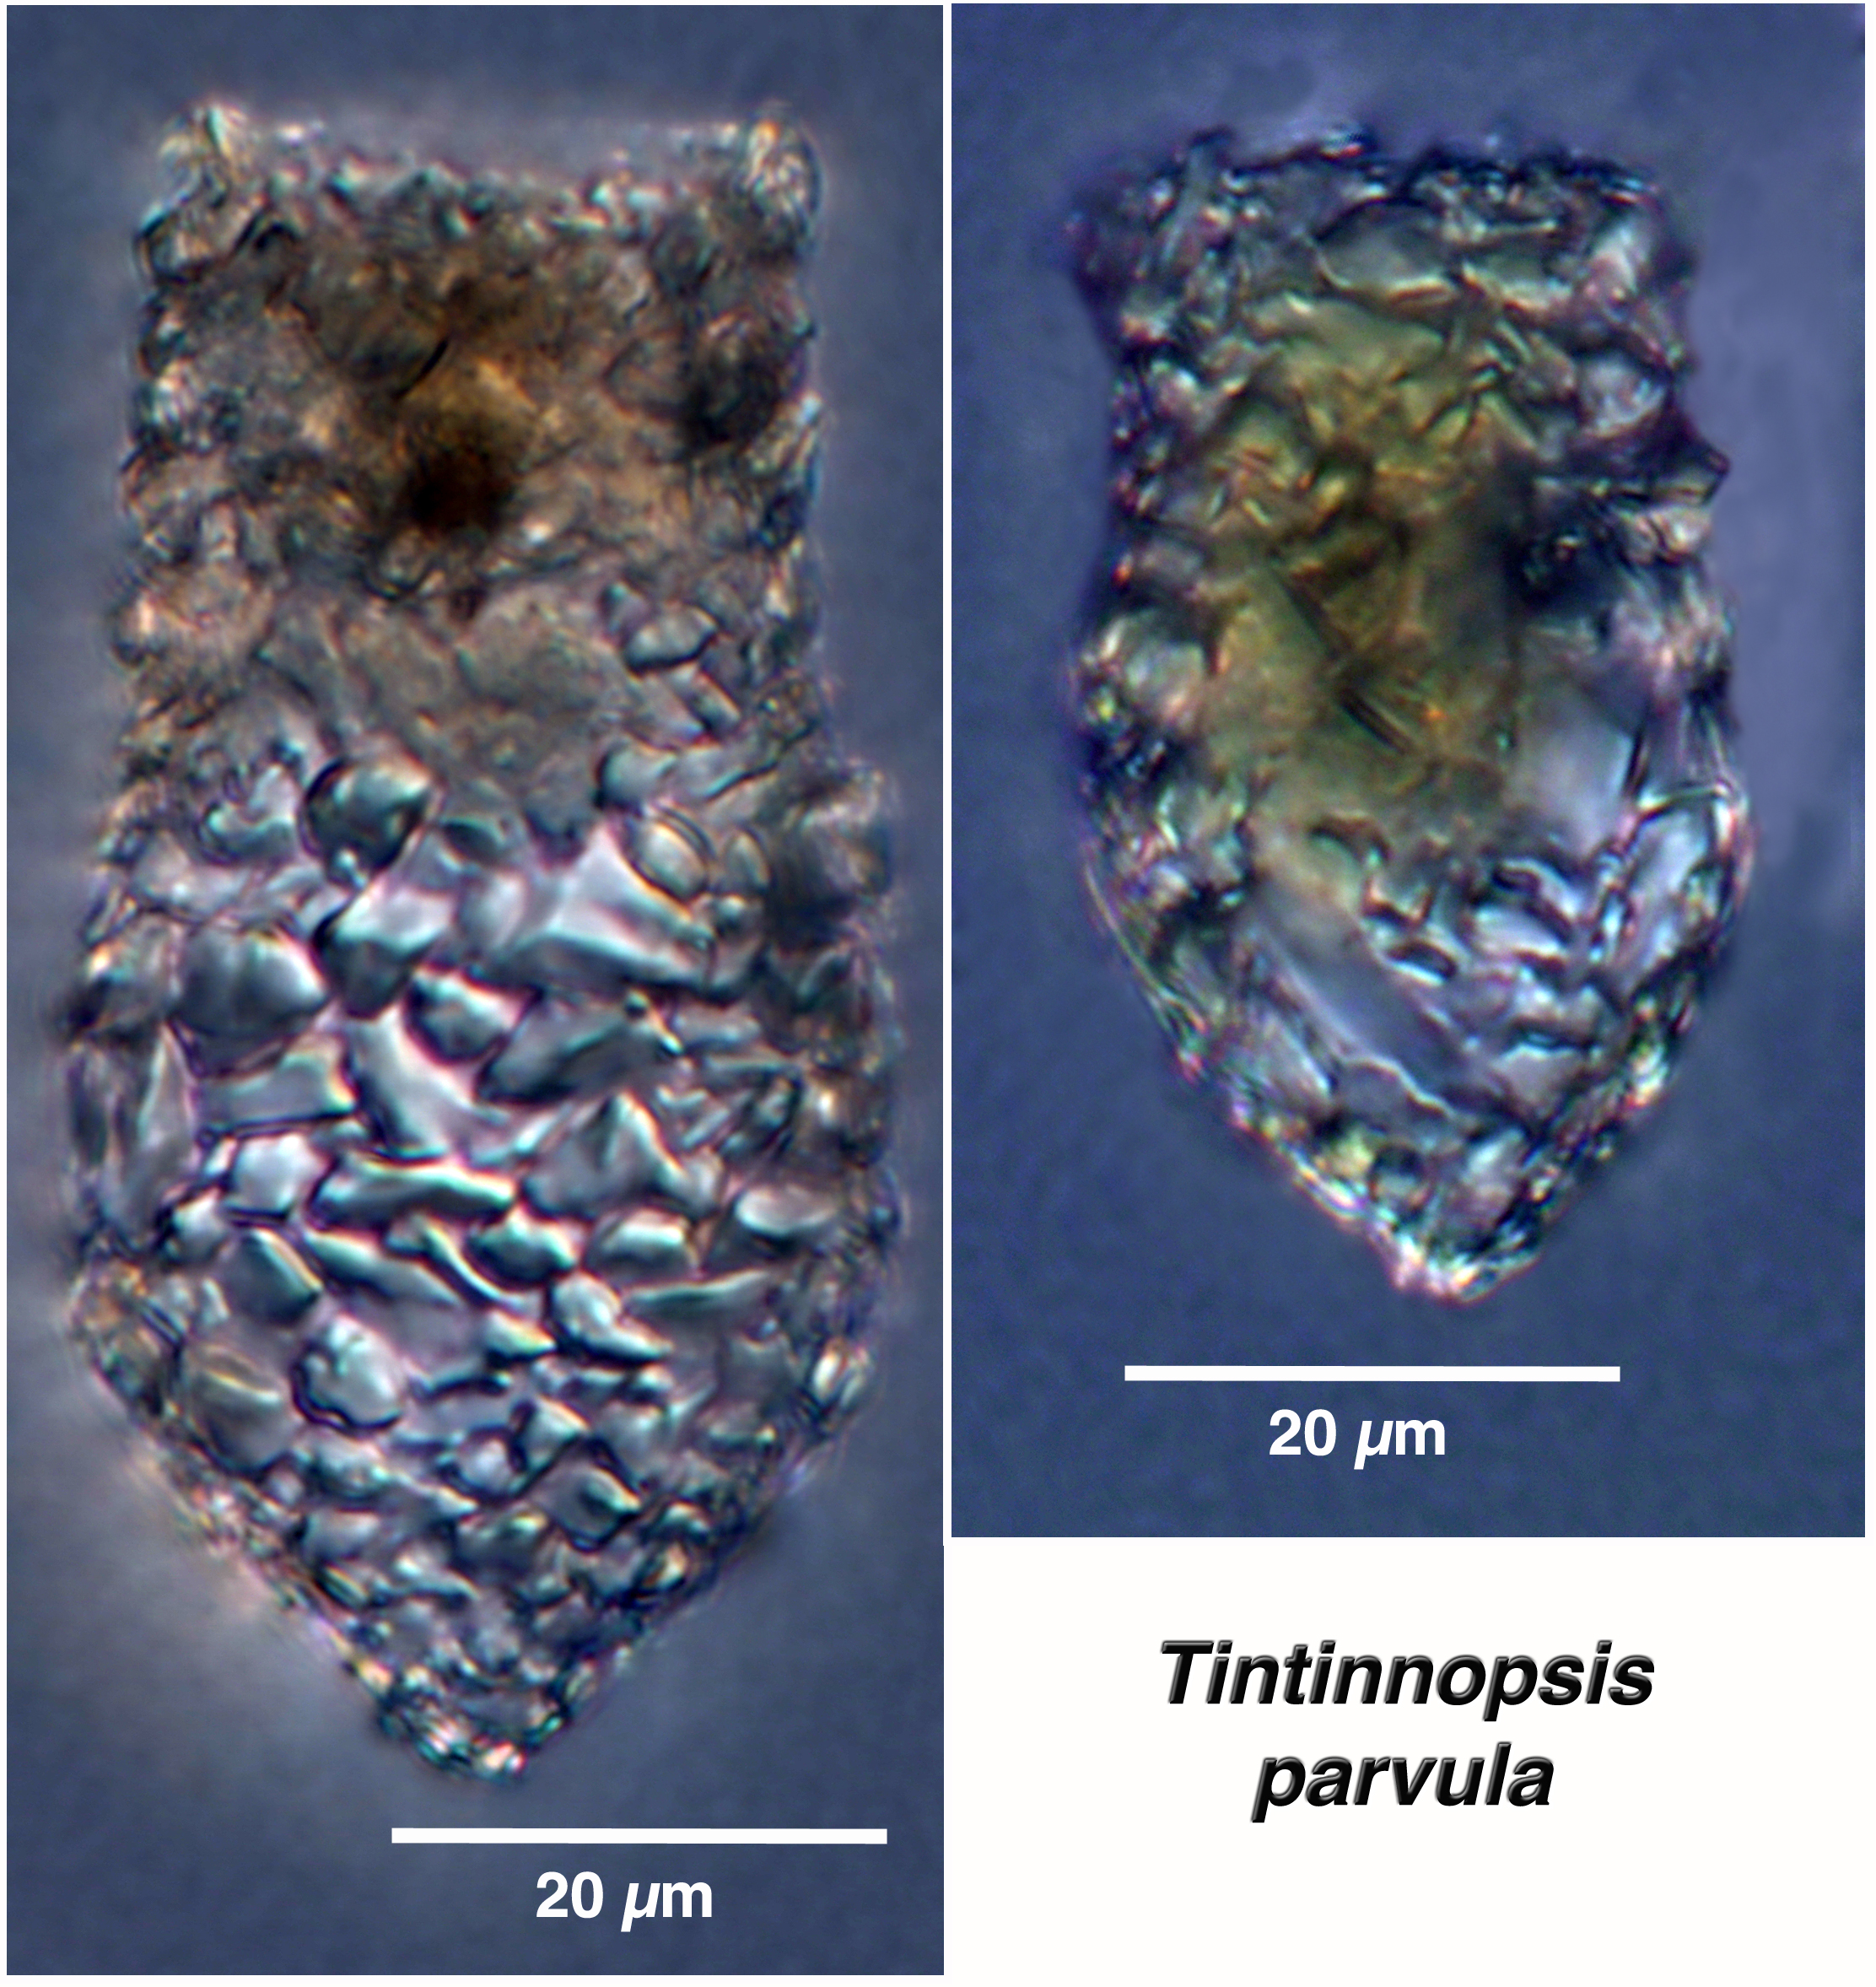 Tintinnopsis parvula